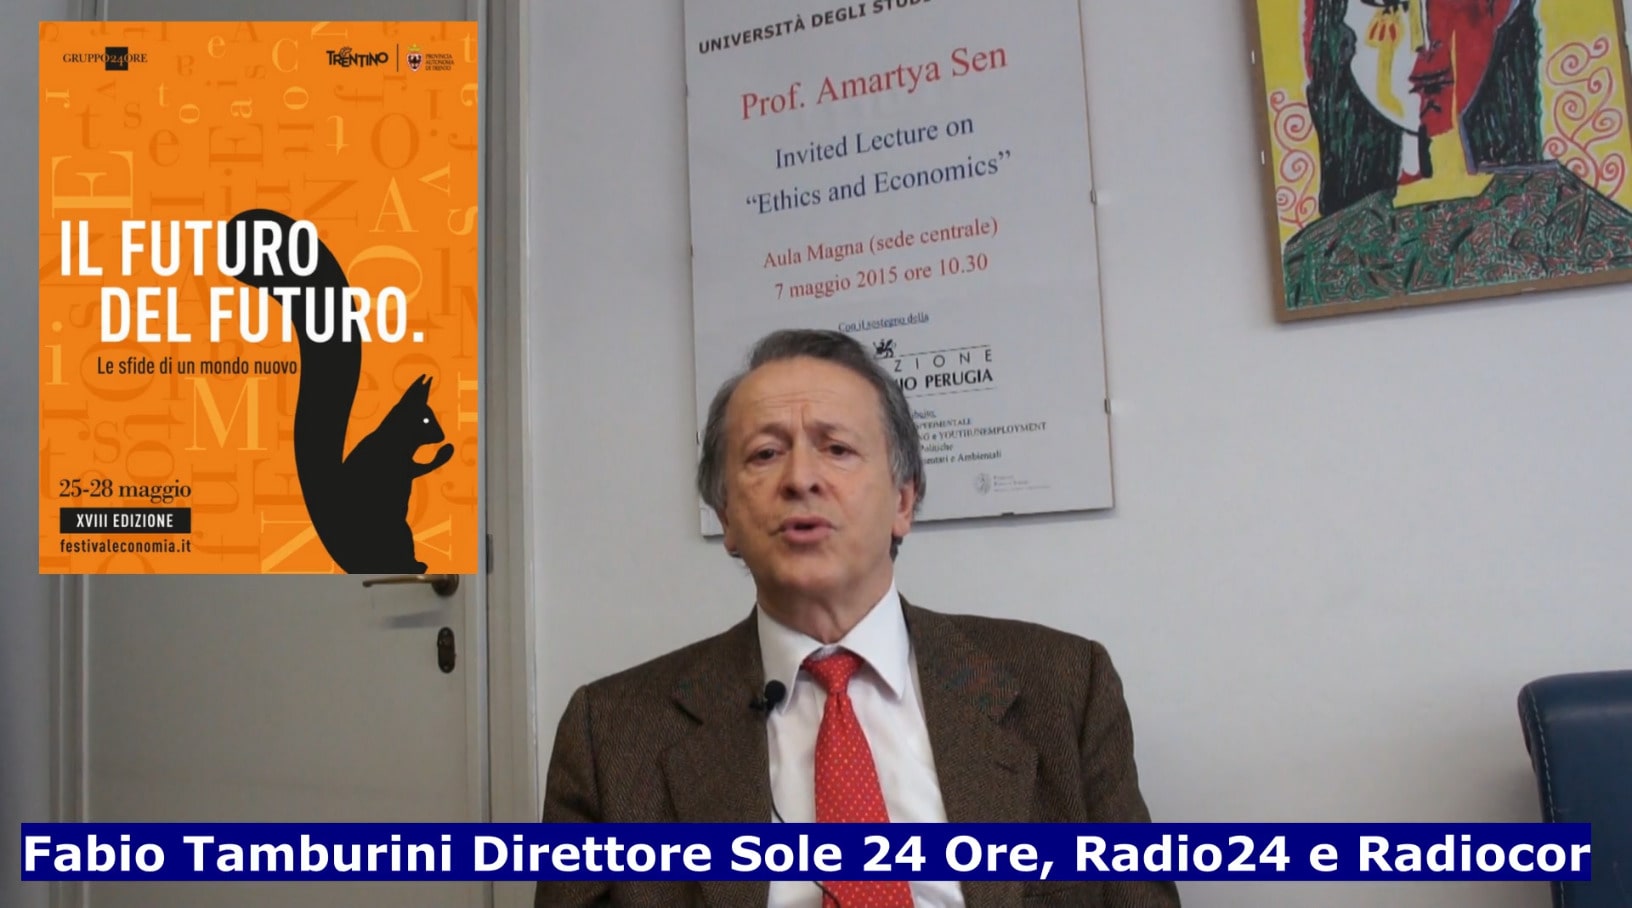 Il Direttore di Sole 24 Ore, Radio 24 e Radiocor, Fabio Tamburini, durante l'intervista con Giuseppe Castellini